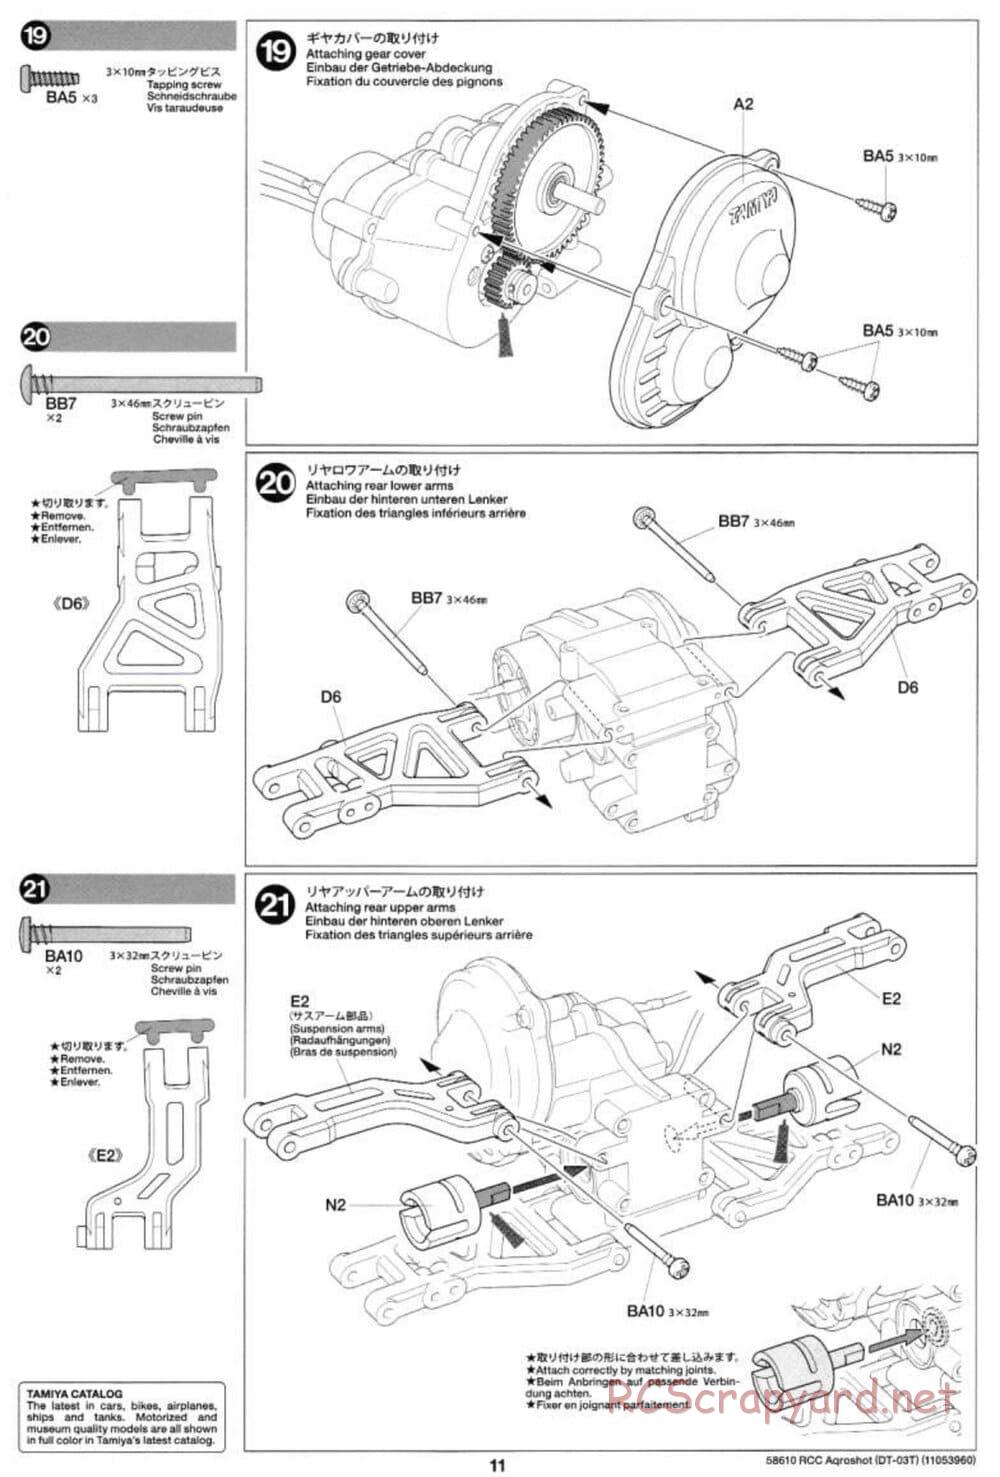 Tamiya - Aqroshot Chassis - Manual - Page 11